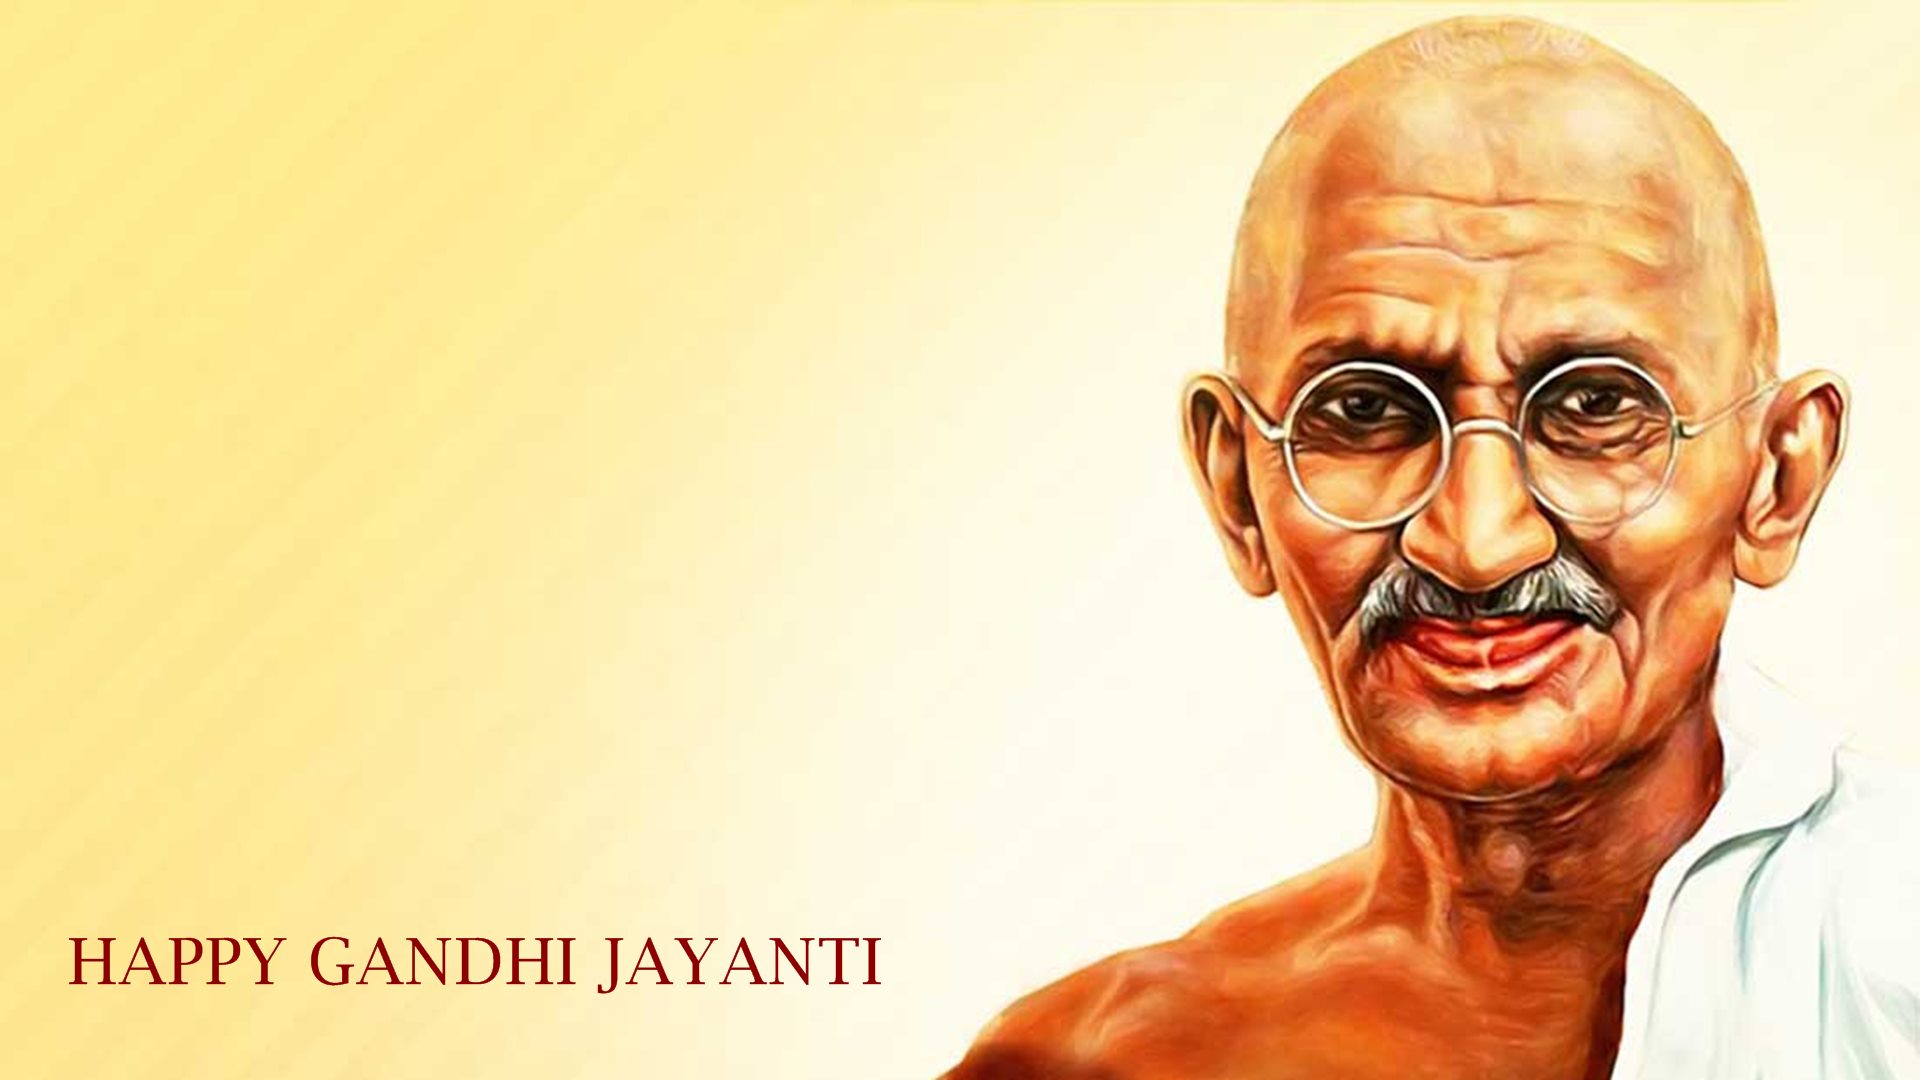 Mahatma Gandhi HD wallpapers for desktop